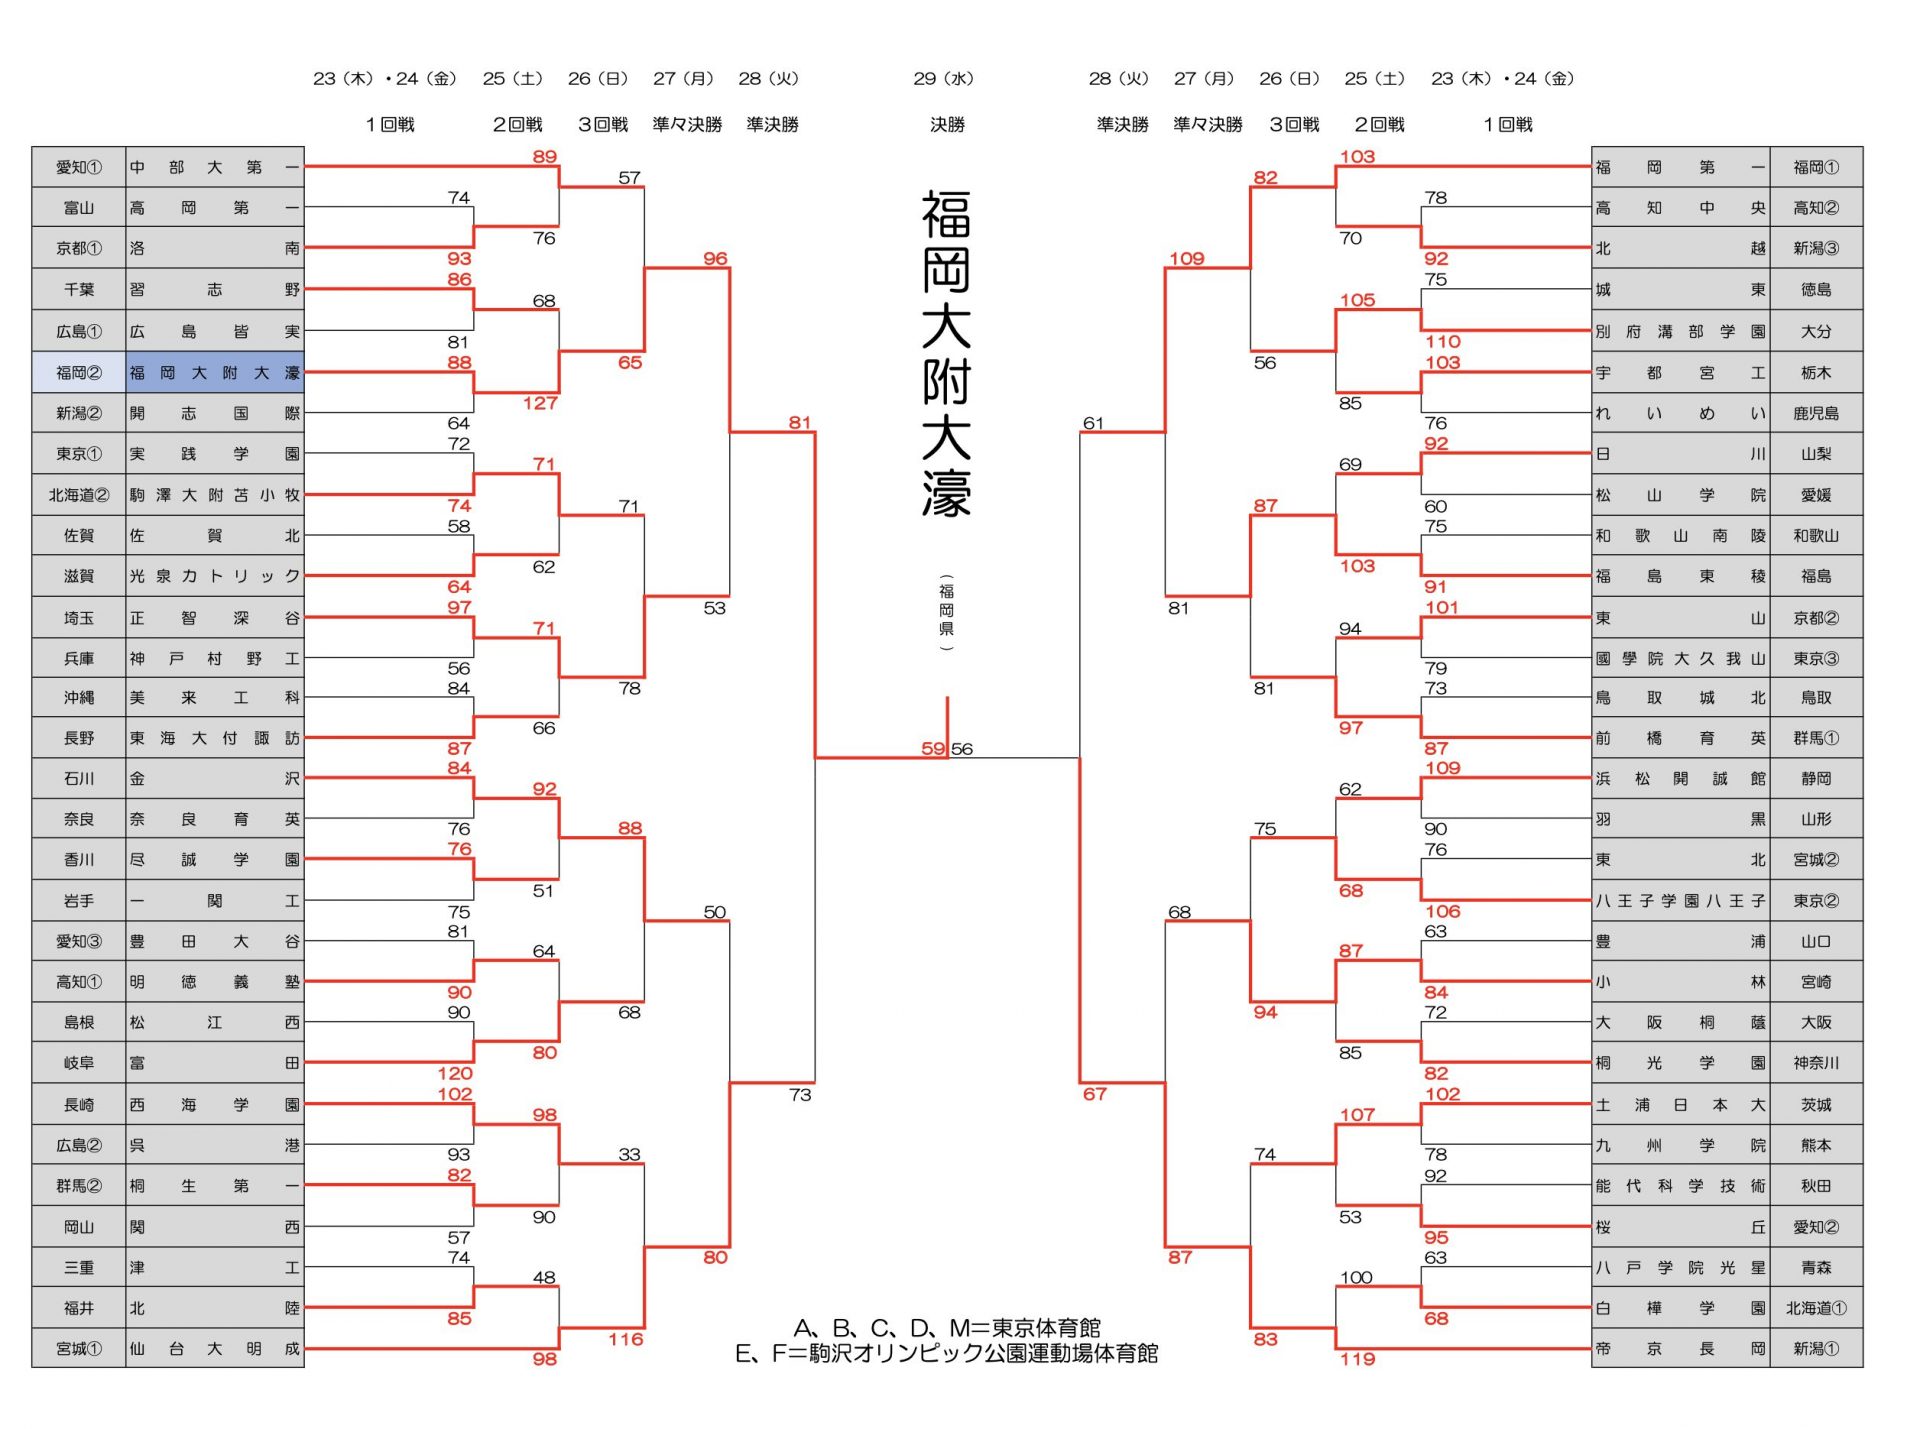 WC2021_tournament_men.jpg